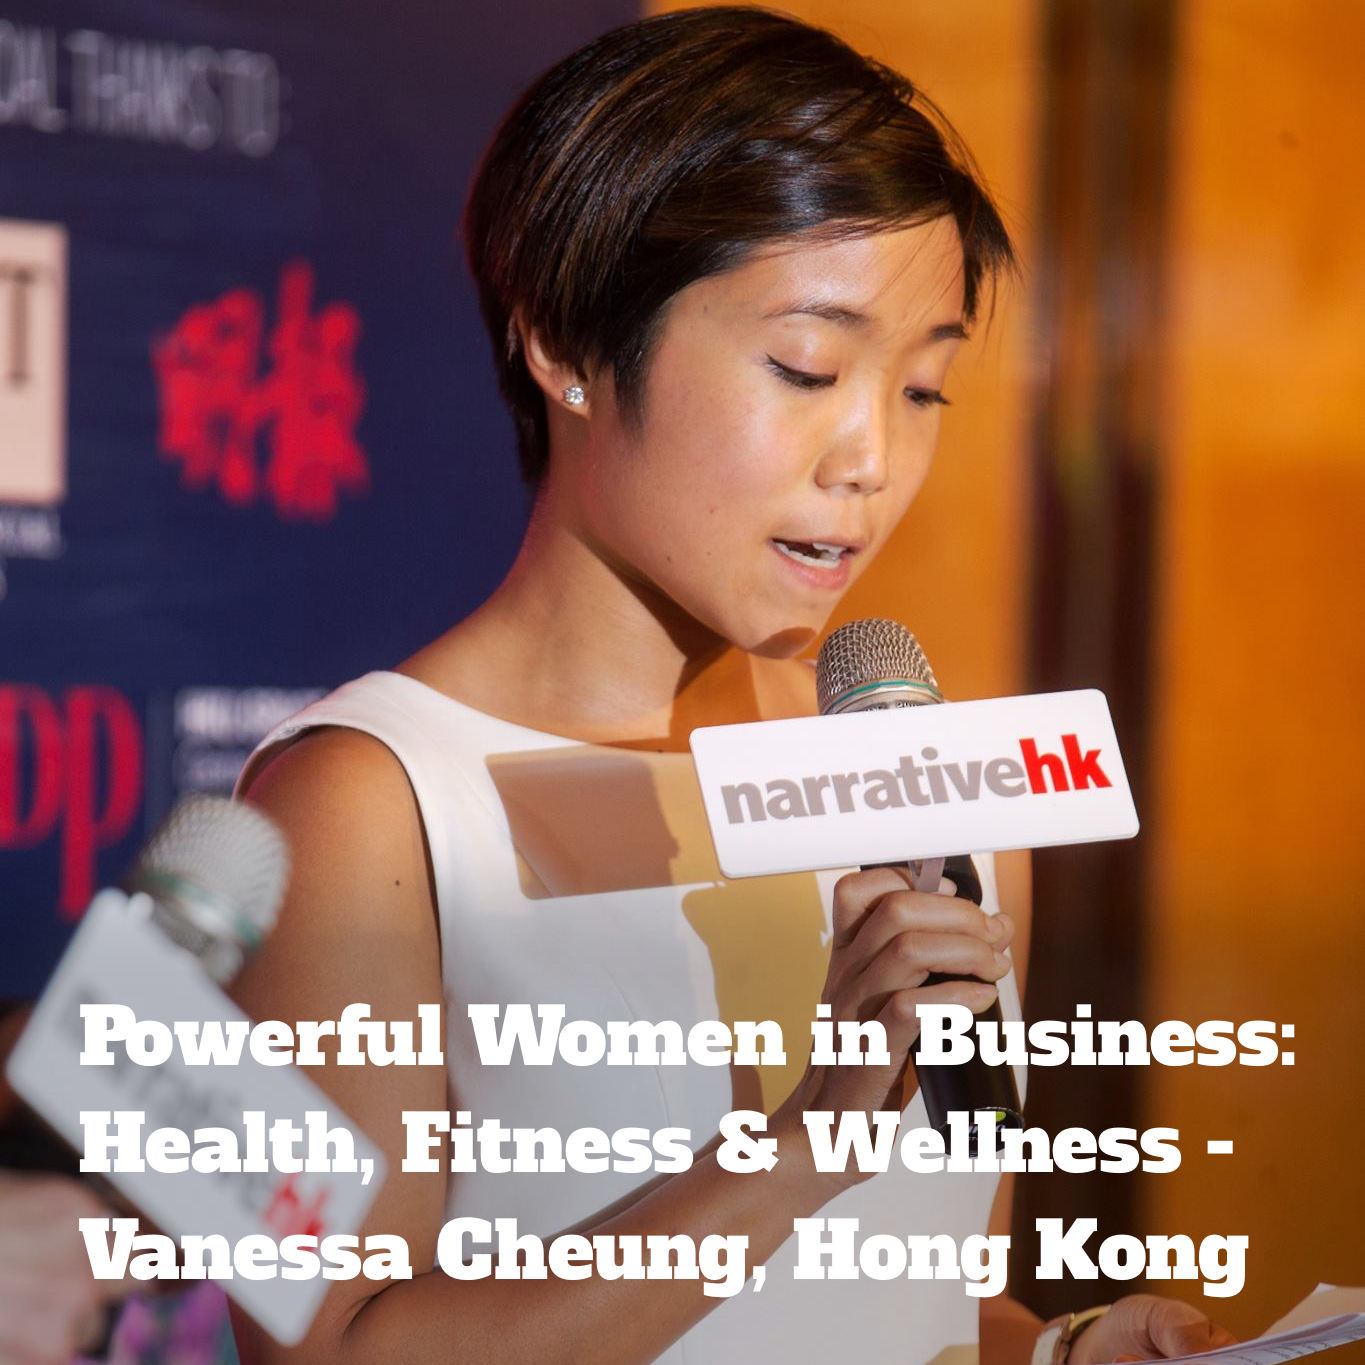 Powerful Women in Business: Health, Fitness & Wellness Entrepreneurs - Vanessa Cheung, Nan Fung, QUO, Hong Kong